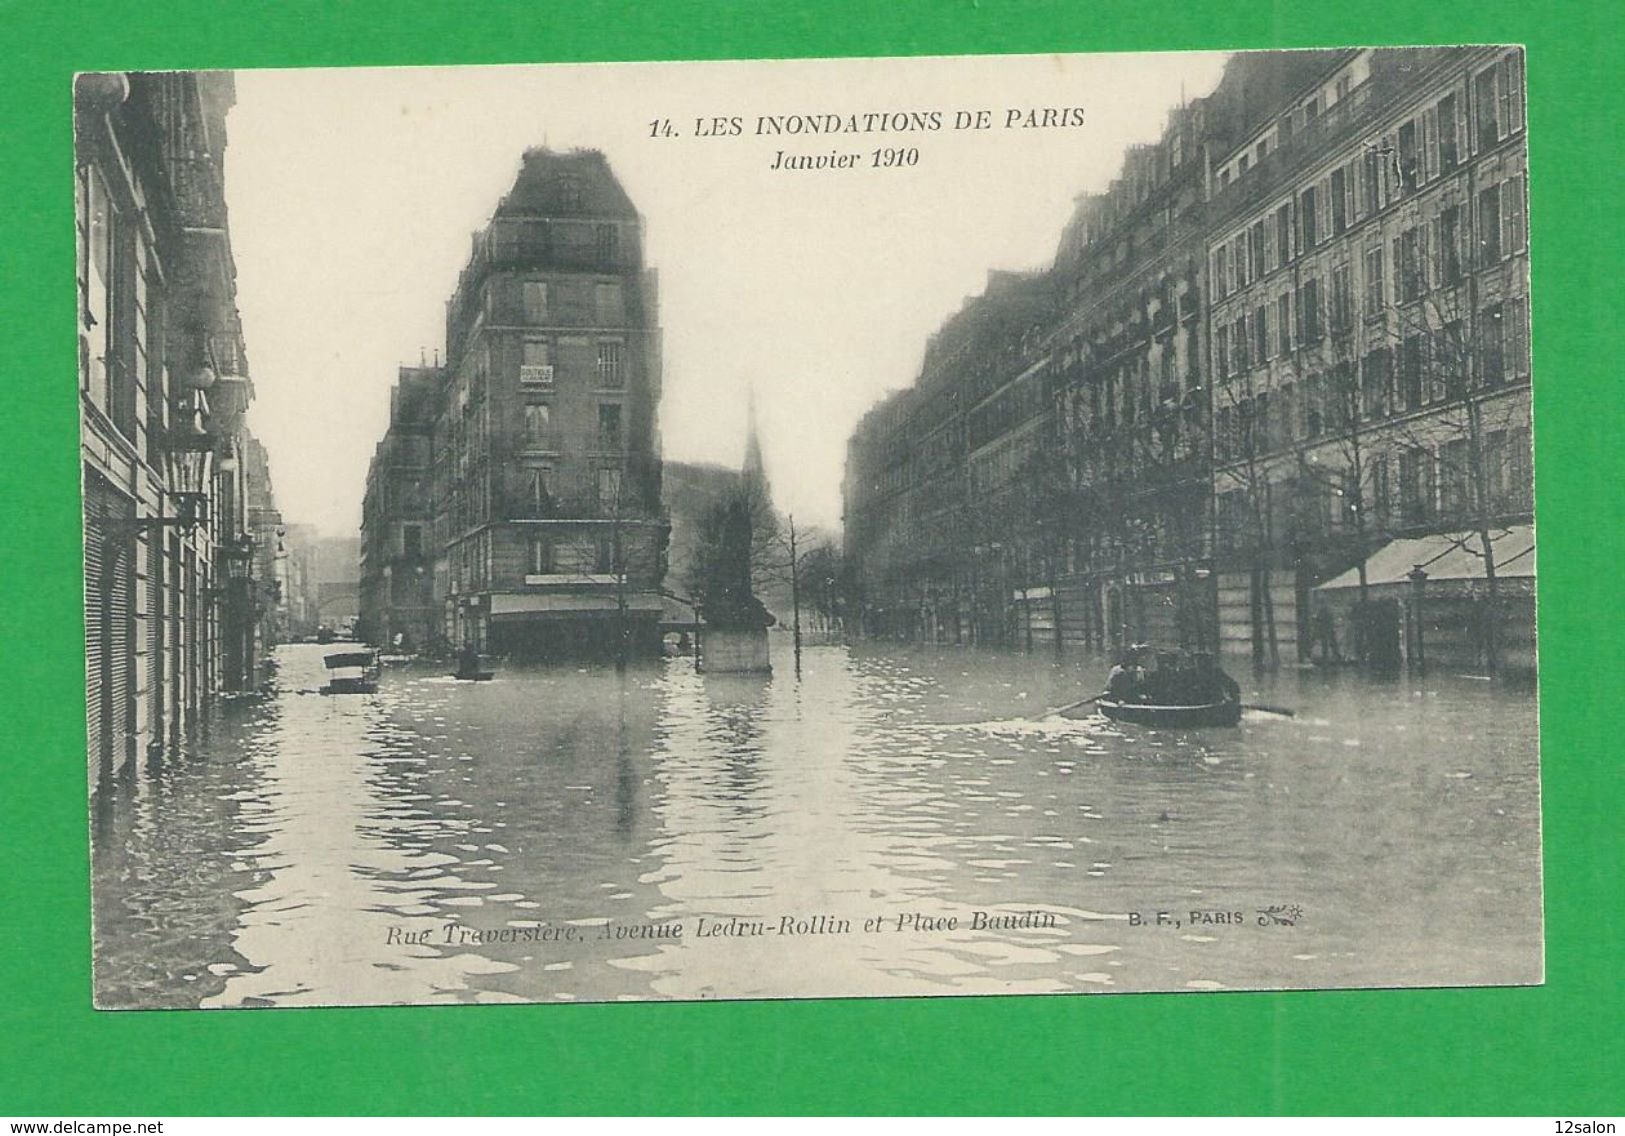 Cartes Postales 75 PARIS INONDATIONS DE 1910 Avenue Ledru Rollin Place Baudin - Paris Flood, 1910